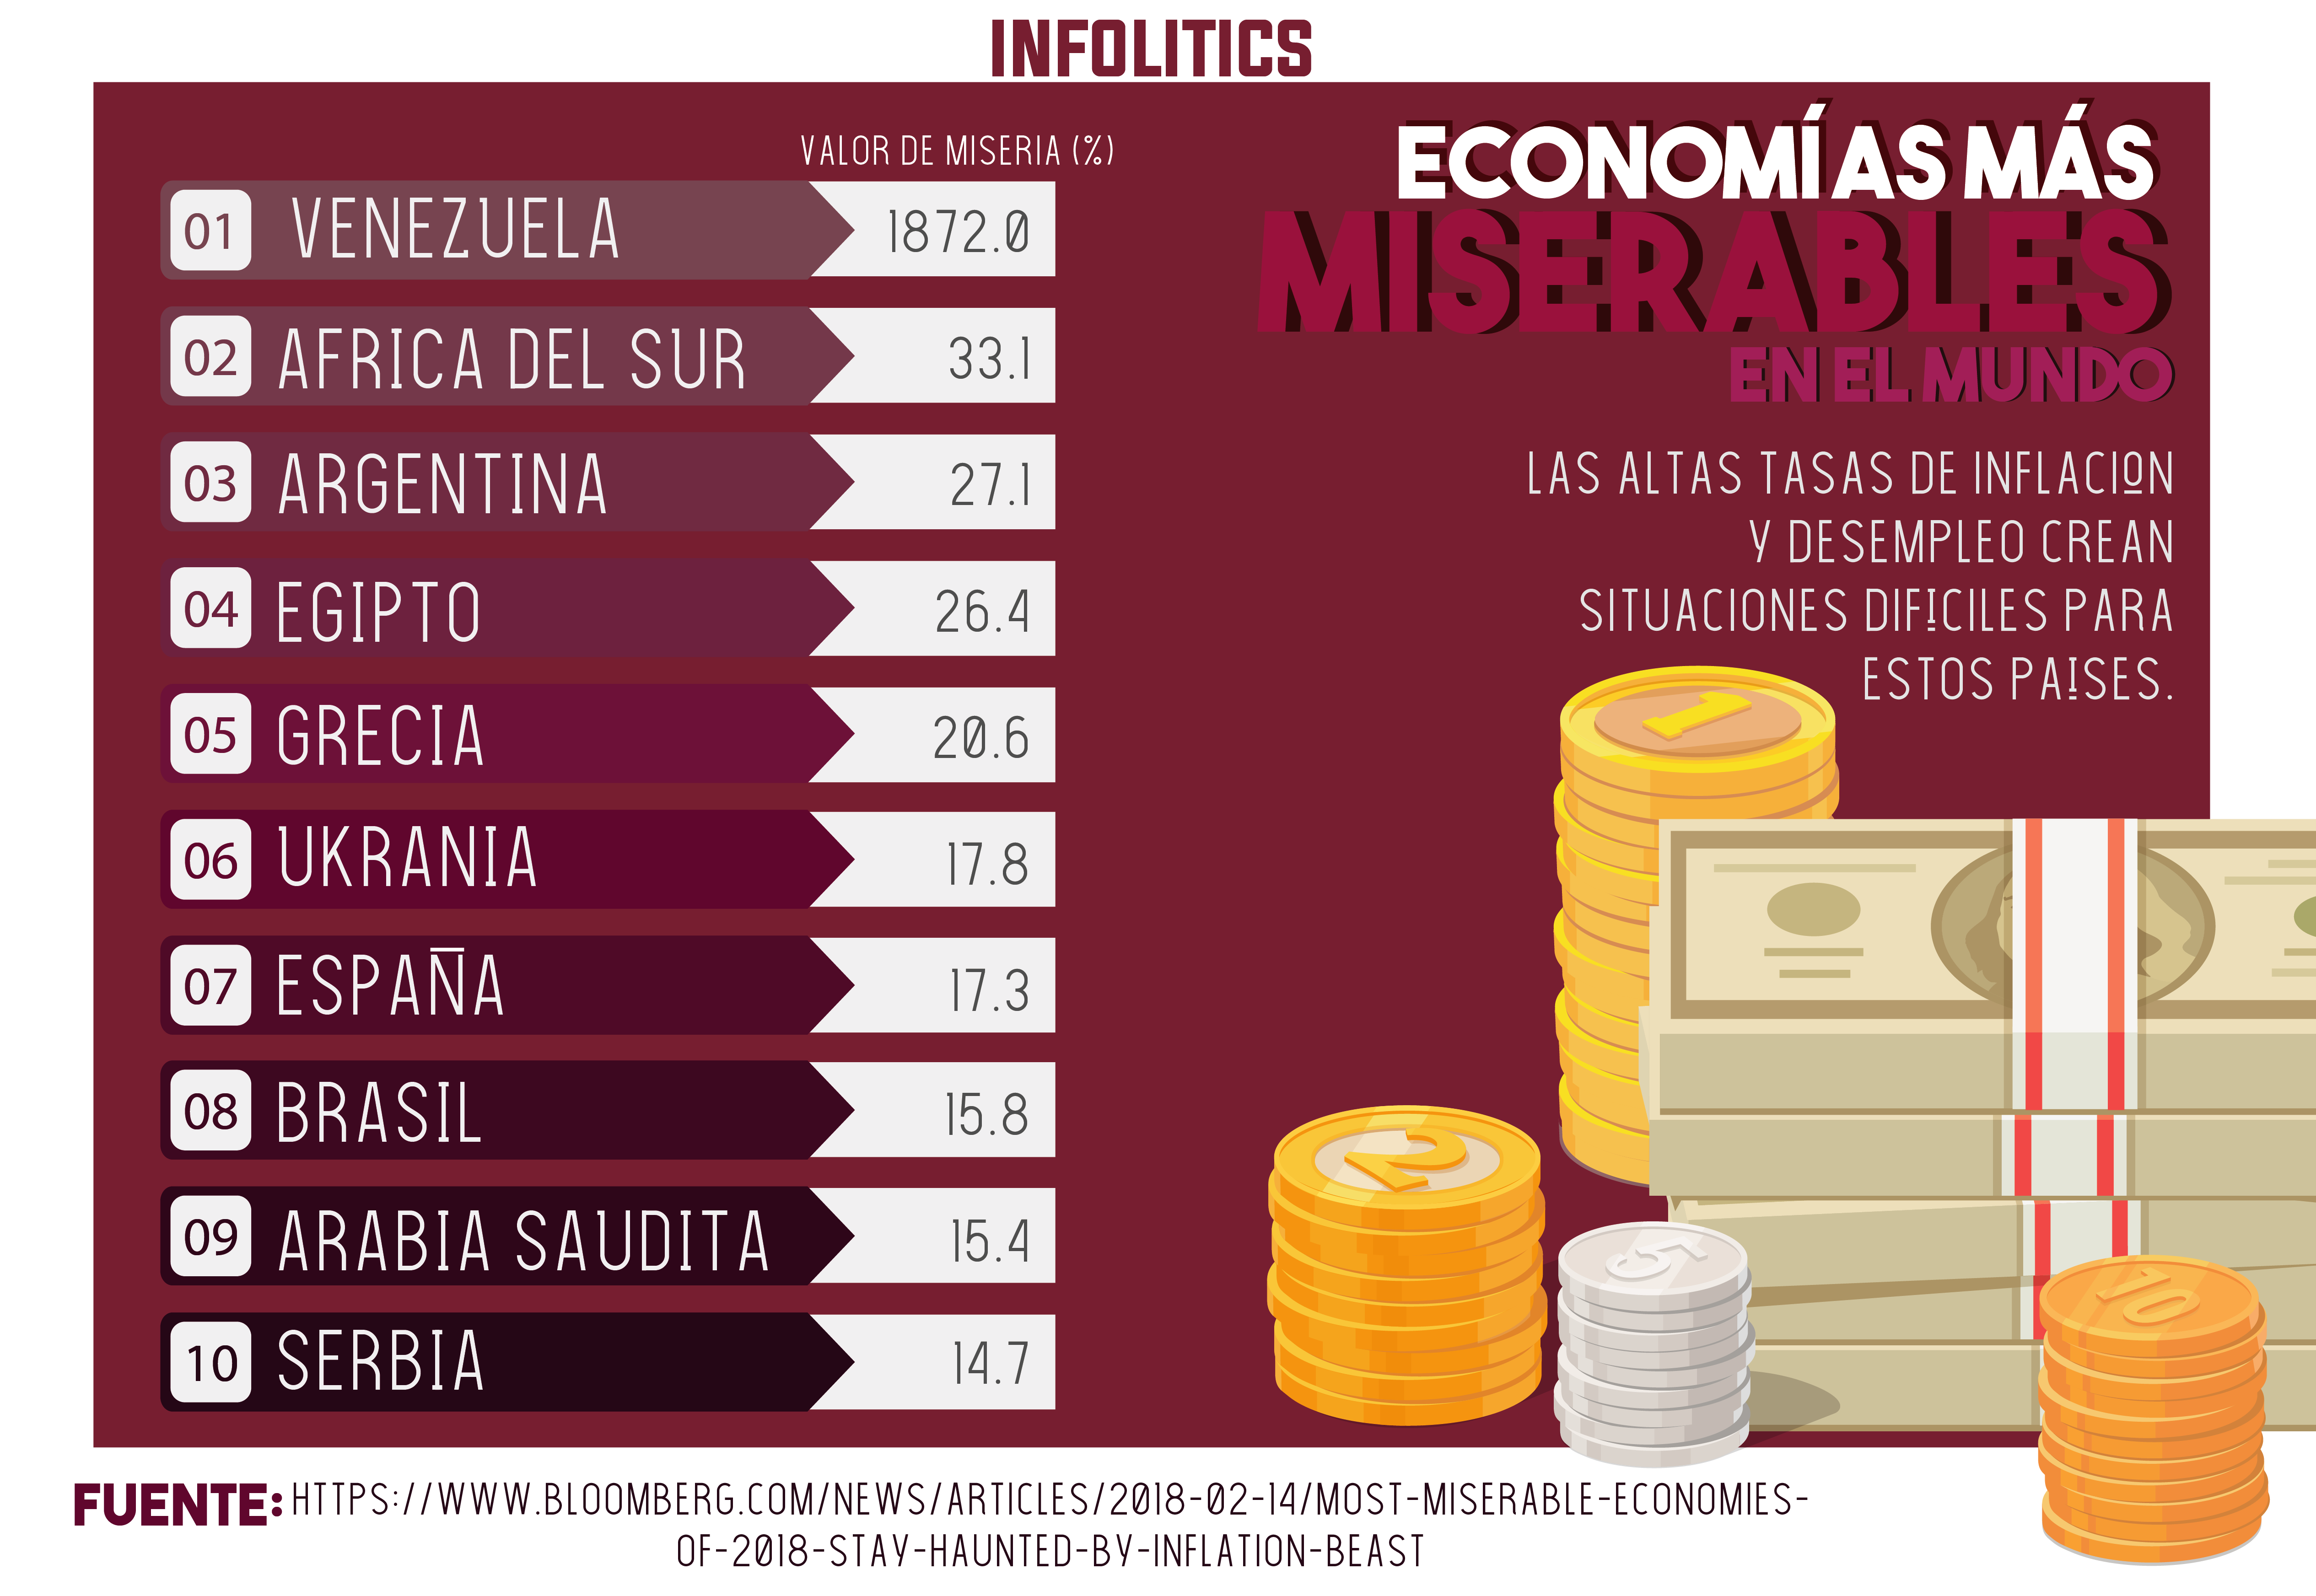 Estas son las economías más miserables según Bloomerg